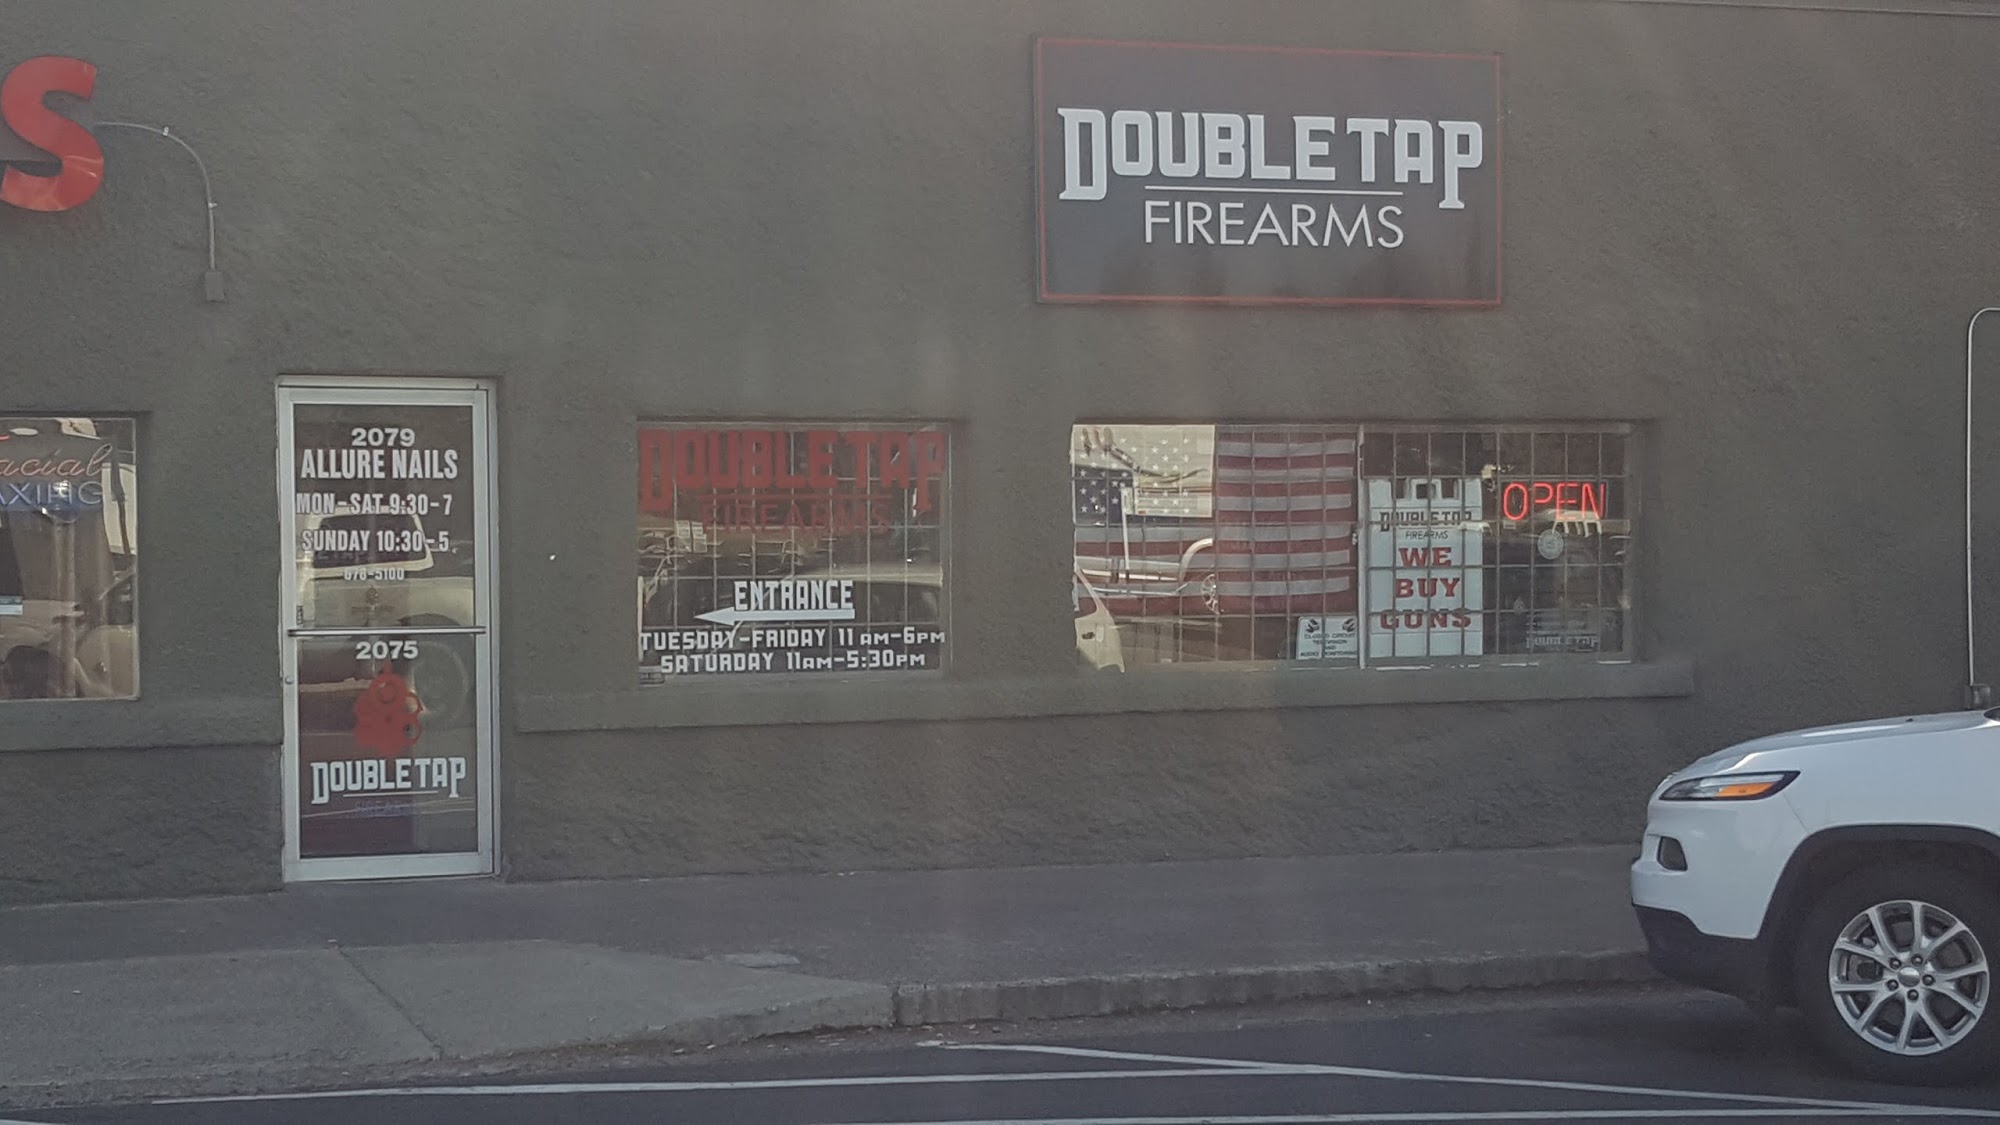 Double Tap Firearms